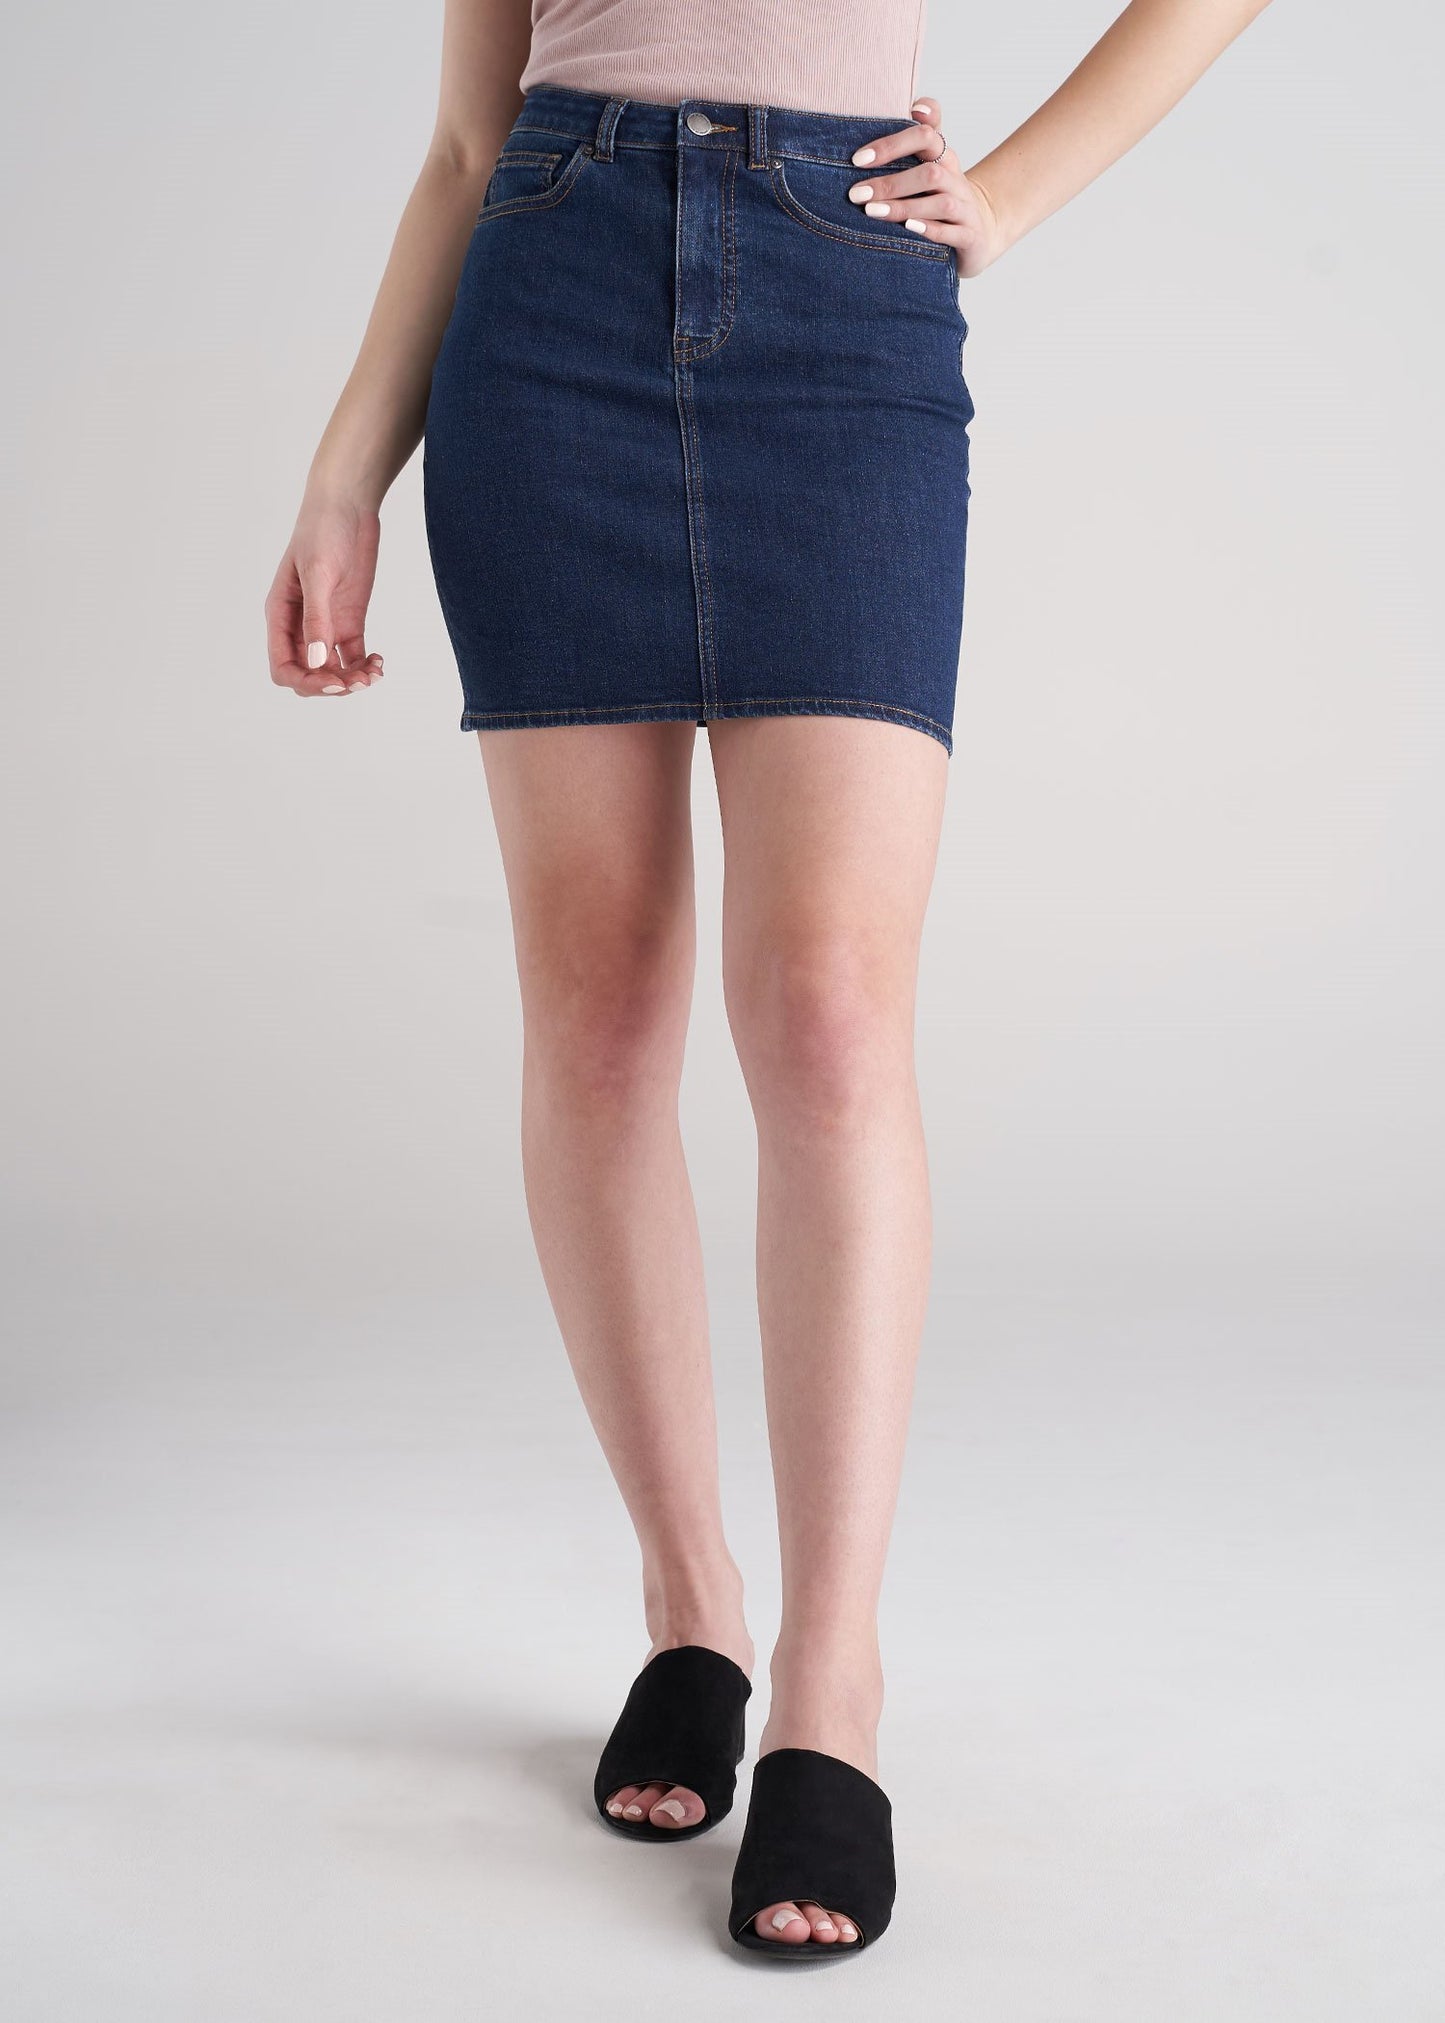 qolati Women's High Waist Button Front Jean Skirt Sexy Split Thigh A-Line  Maxi Skirt Trendy Solid Long Denim Pencil Skirts - Walmart.com